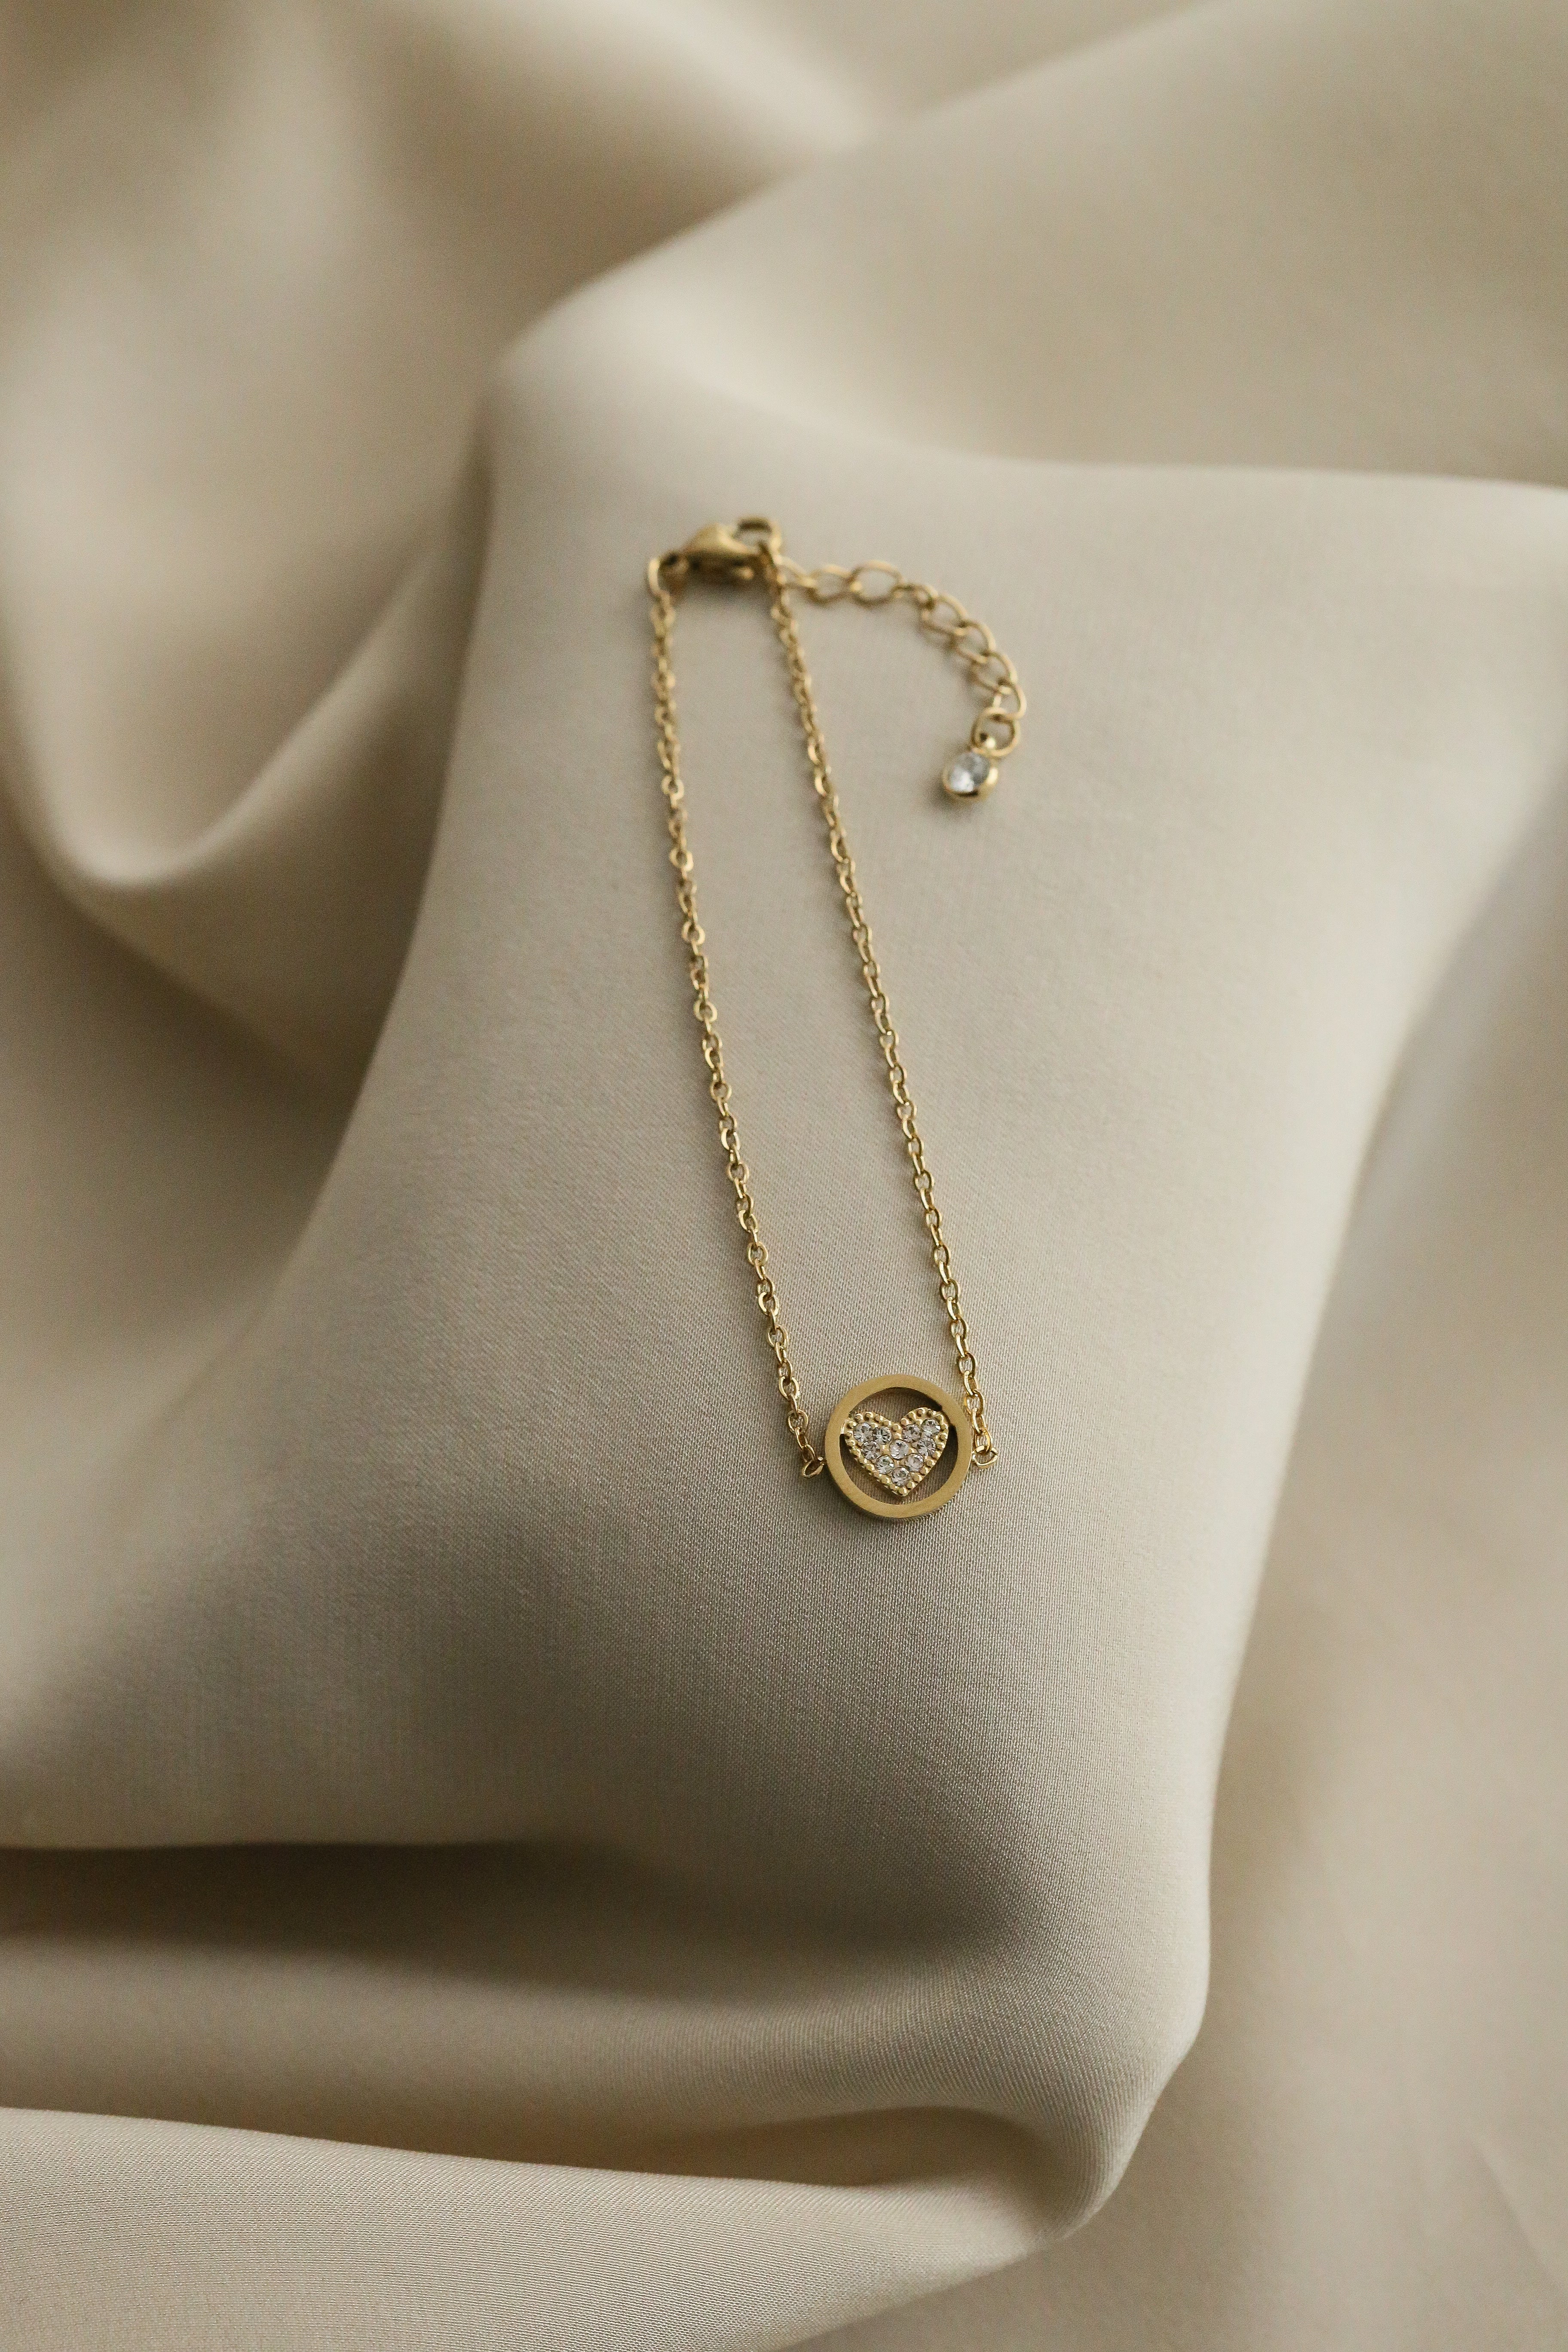 Rosie Bracelet - Boutique Minimaliste has waterproof, durable, elegant and vintage inspired jewelry